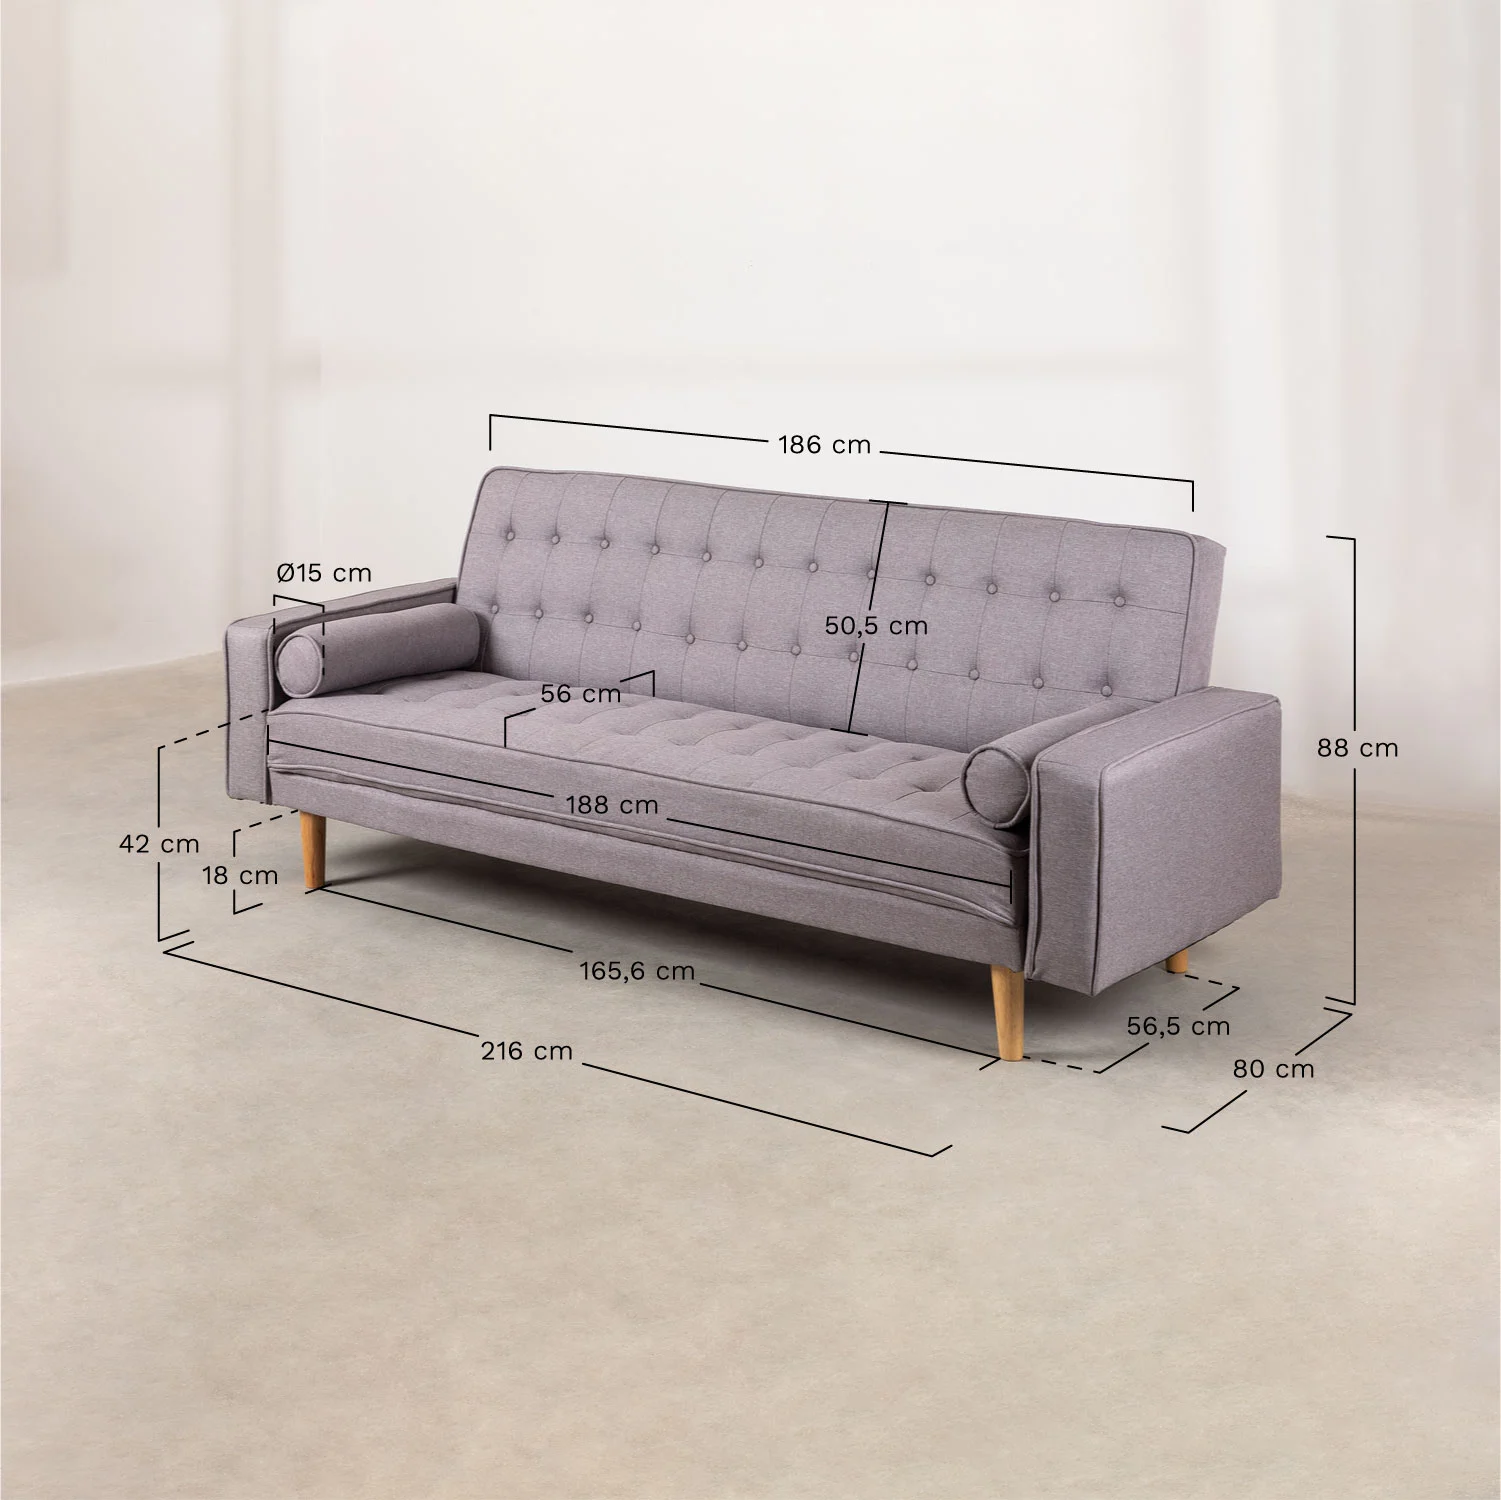 sofa cama de 3 plazas en lino brion (2)